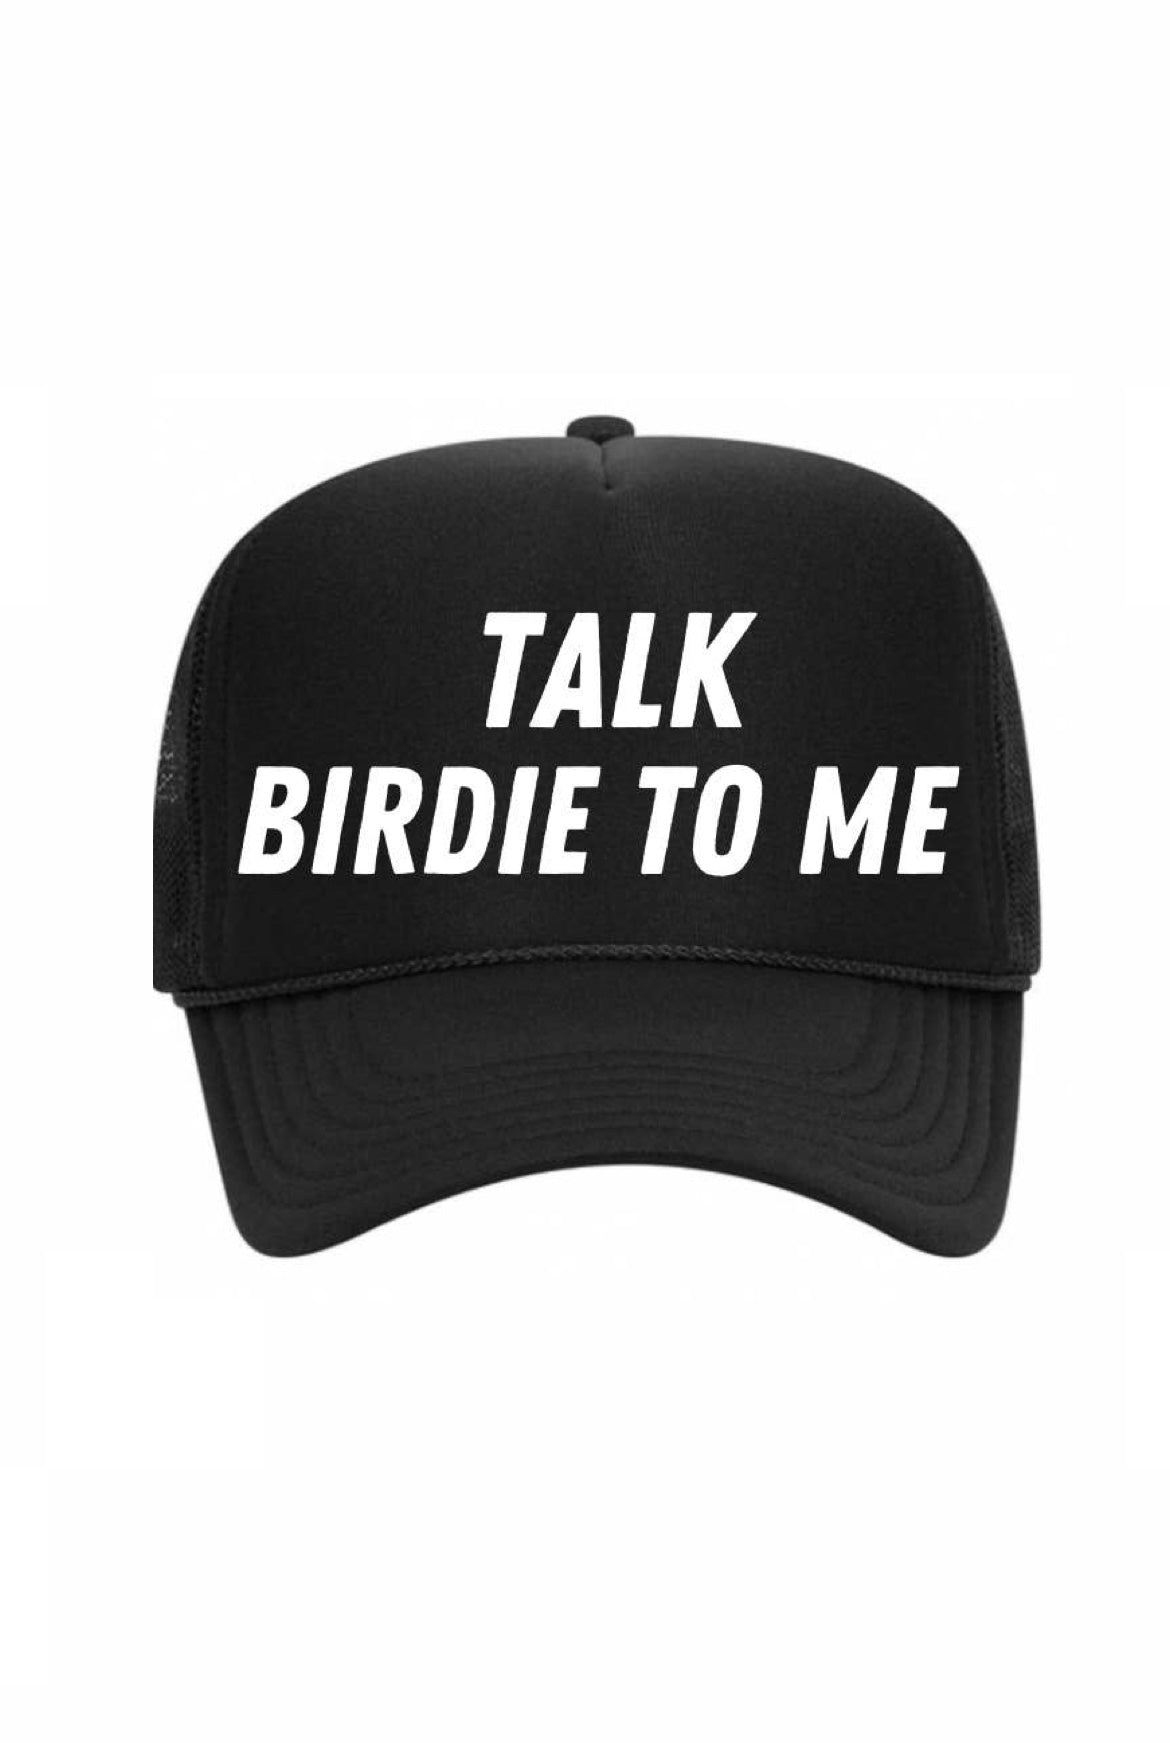 TALK BIRDIE TO ME TRUCKER HAT - BLACK